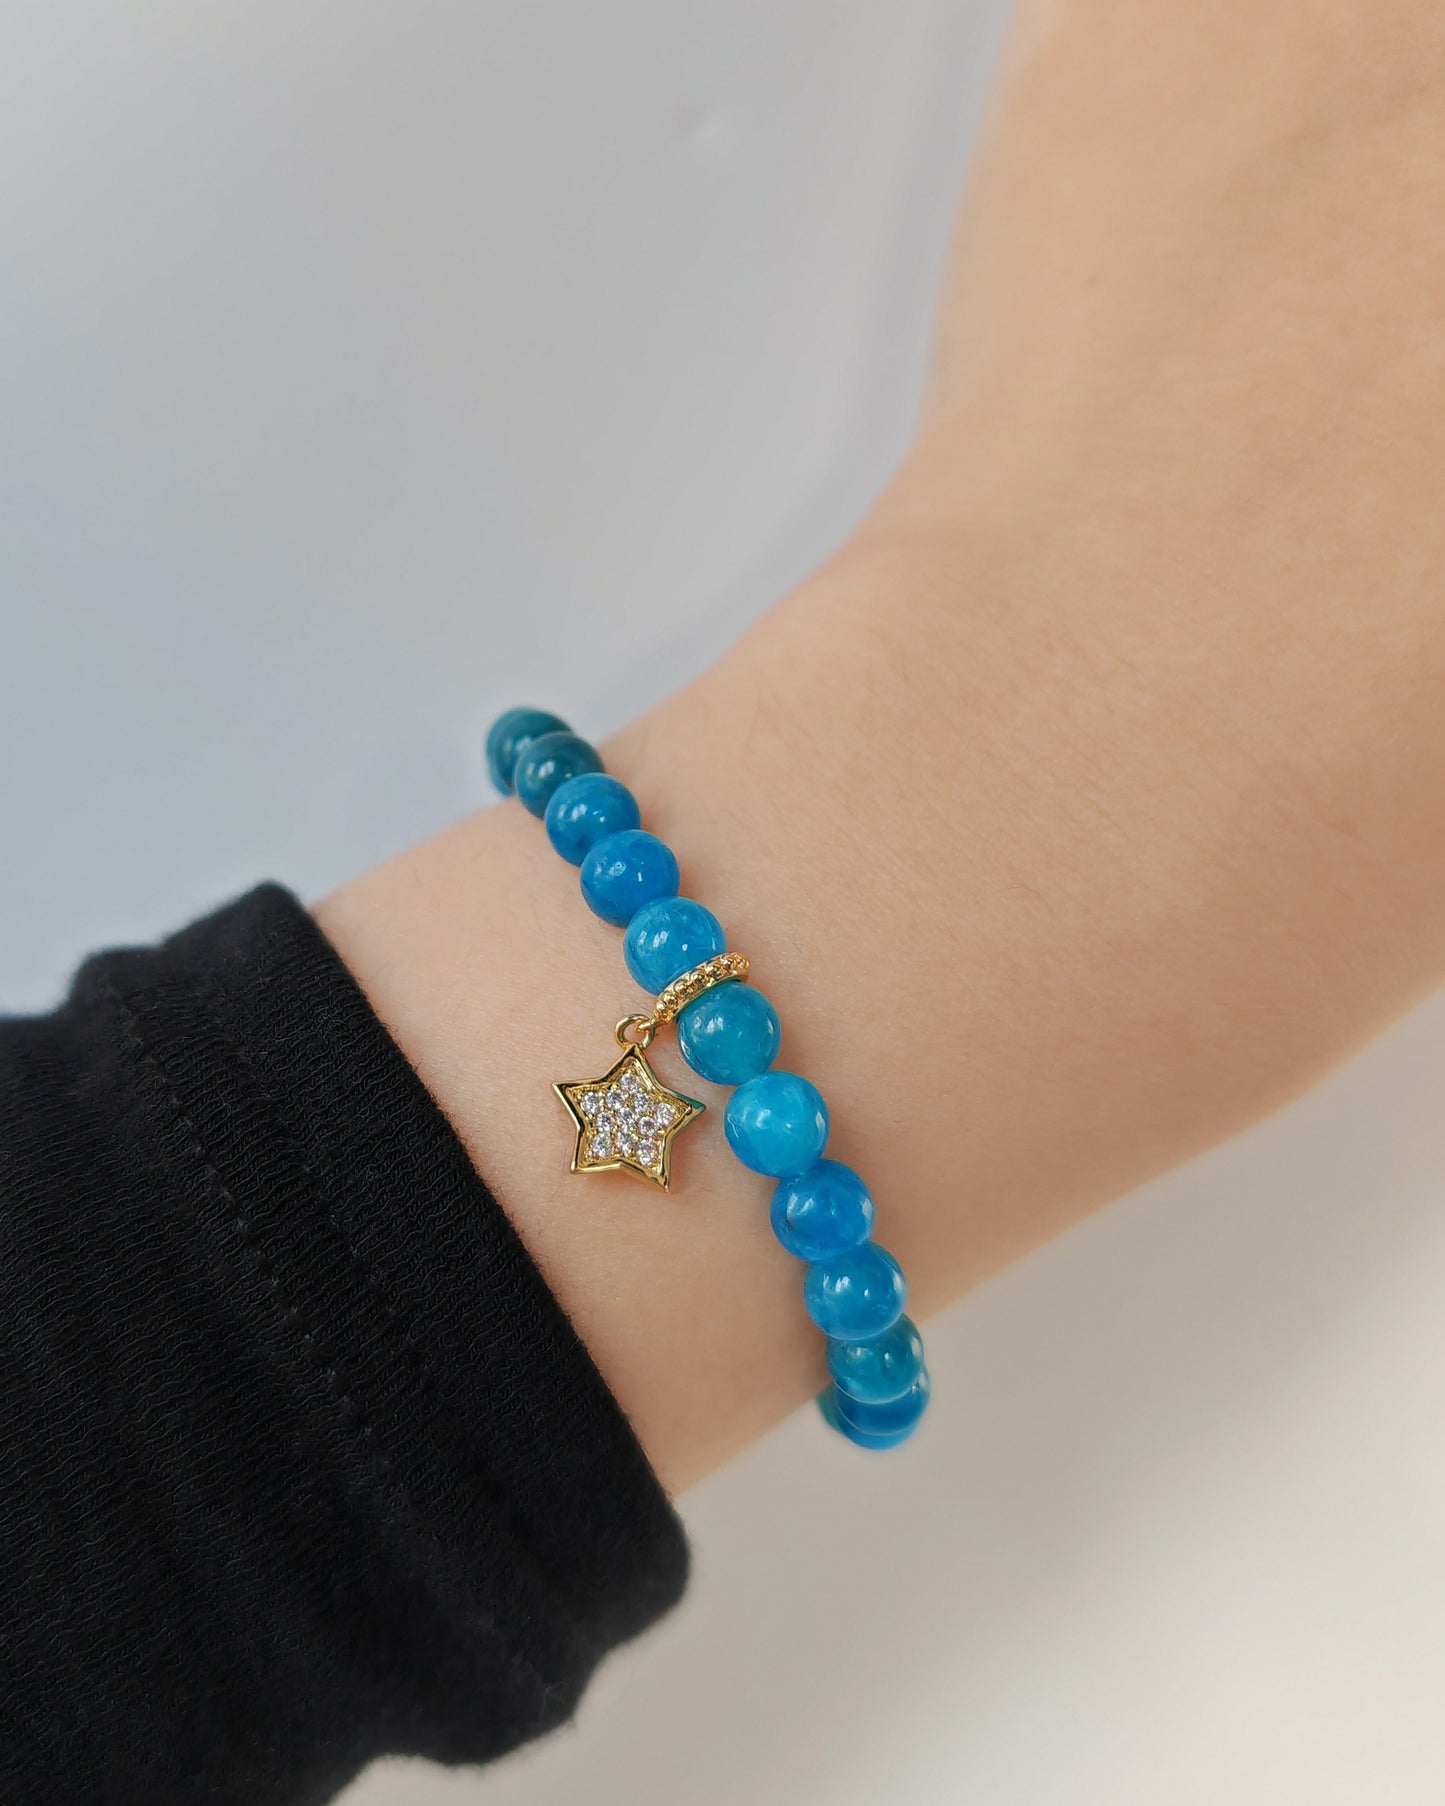 Star Dangling on Blue Apatite Crystal Bracelet